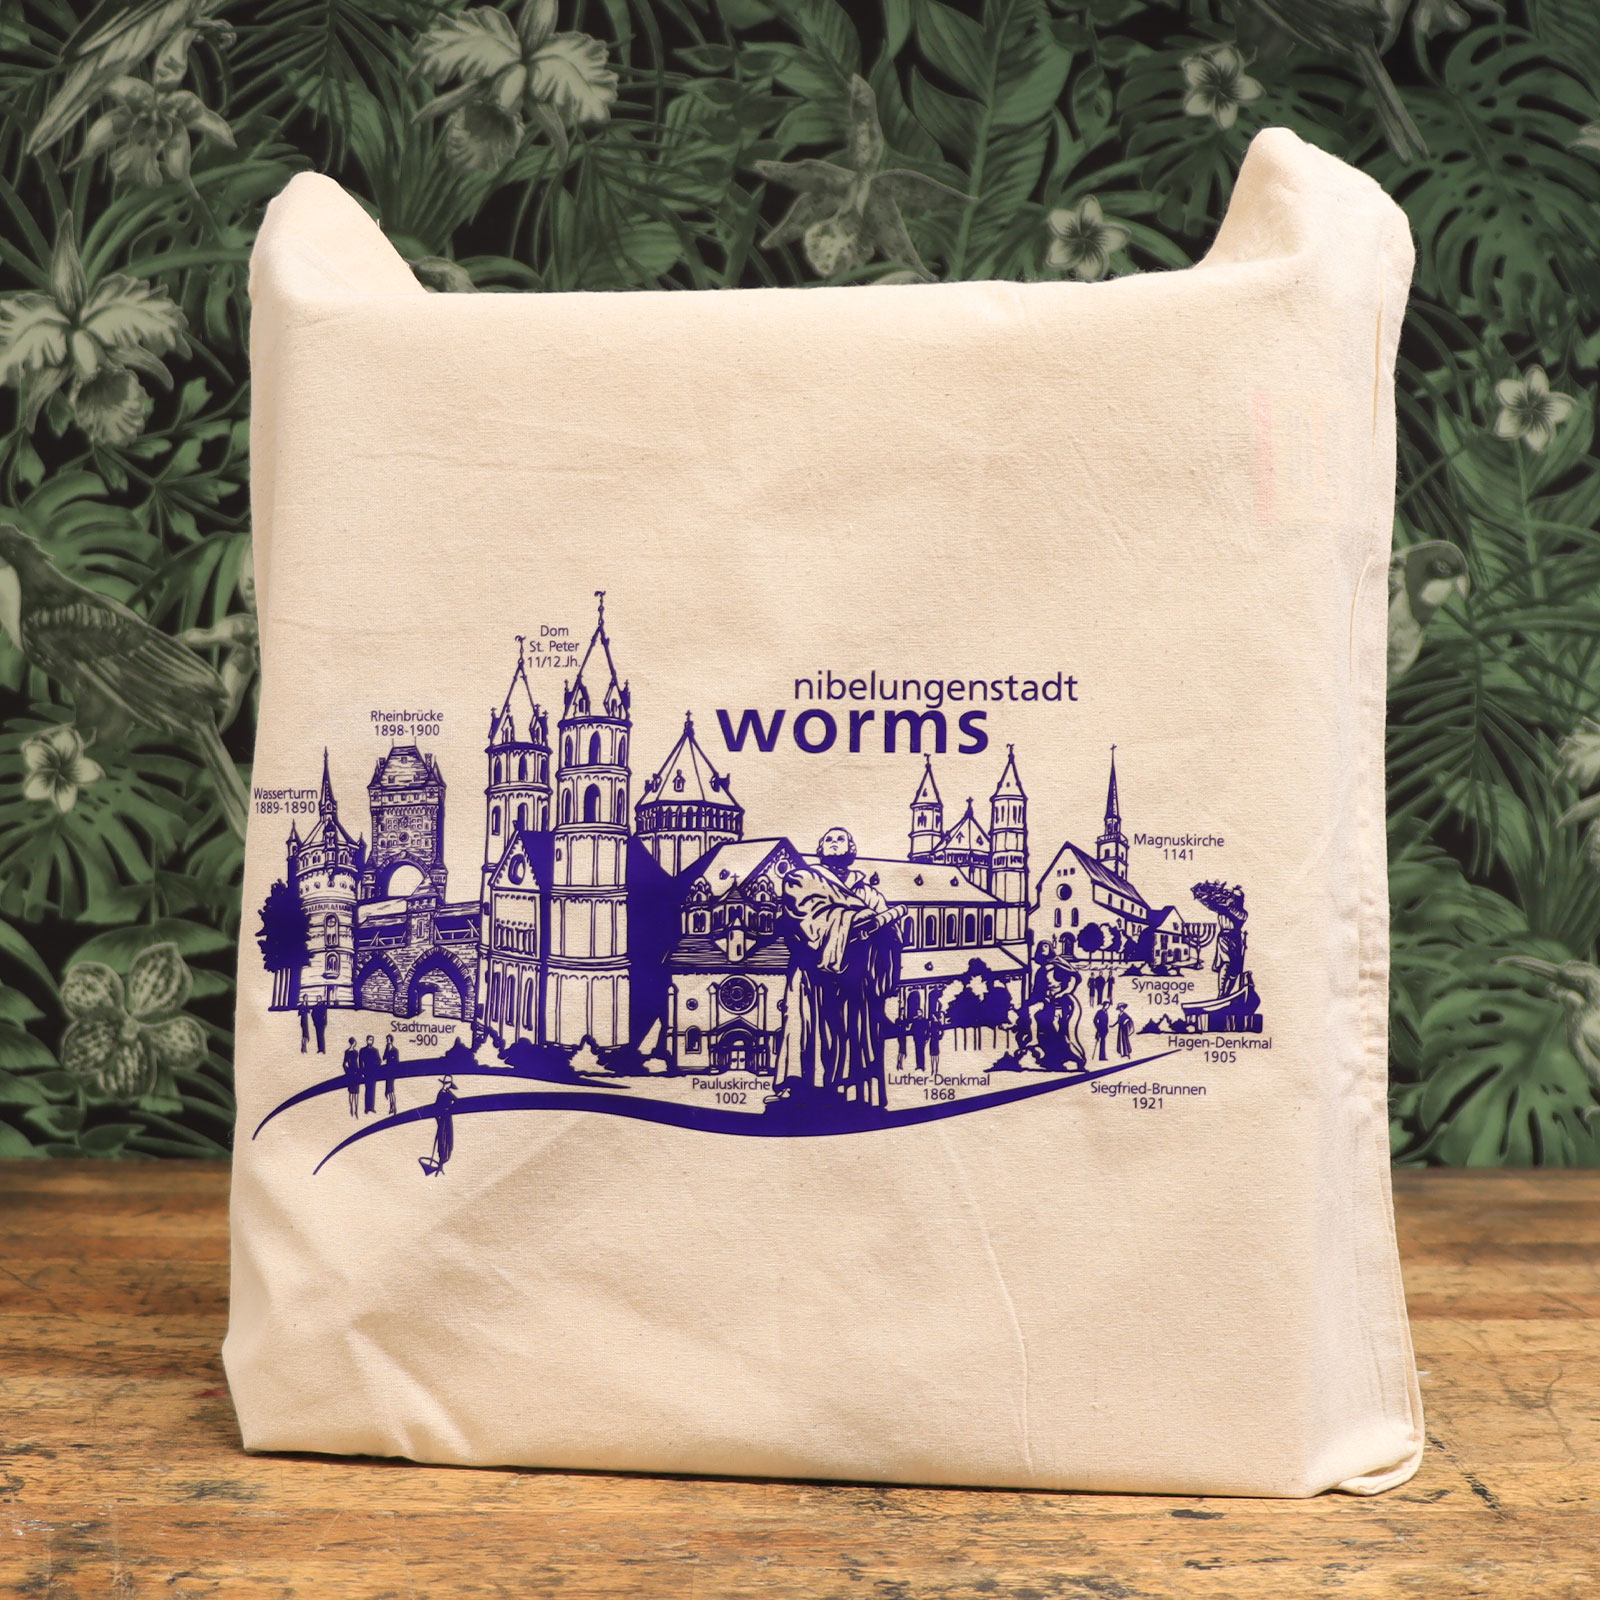 Ambientebild von der Stofftasche mit Worms Aufdruck von der Touristik Information.